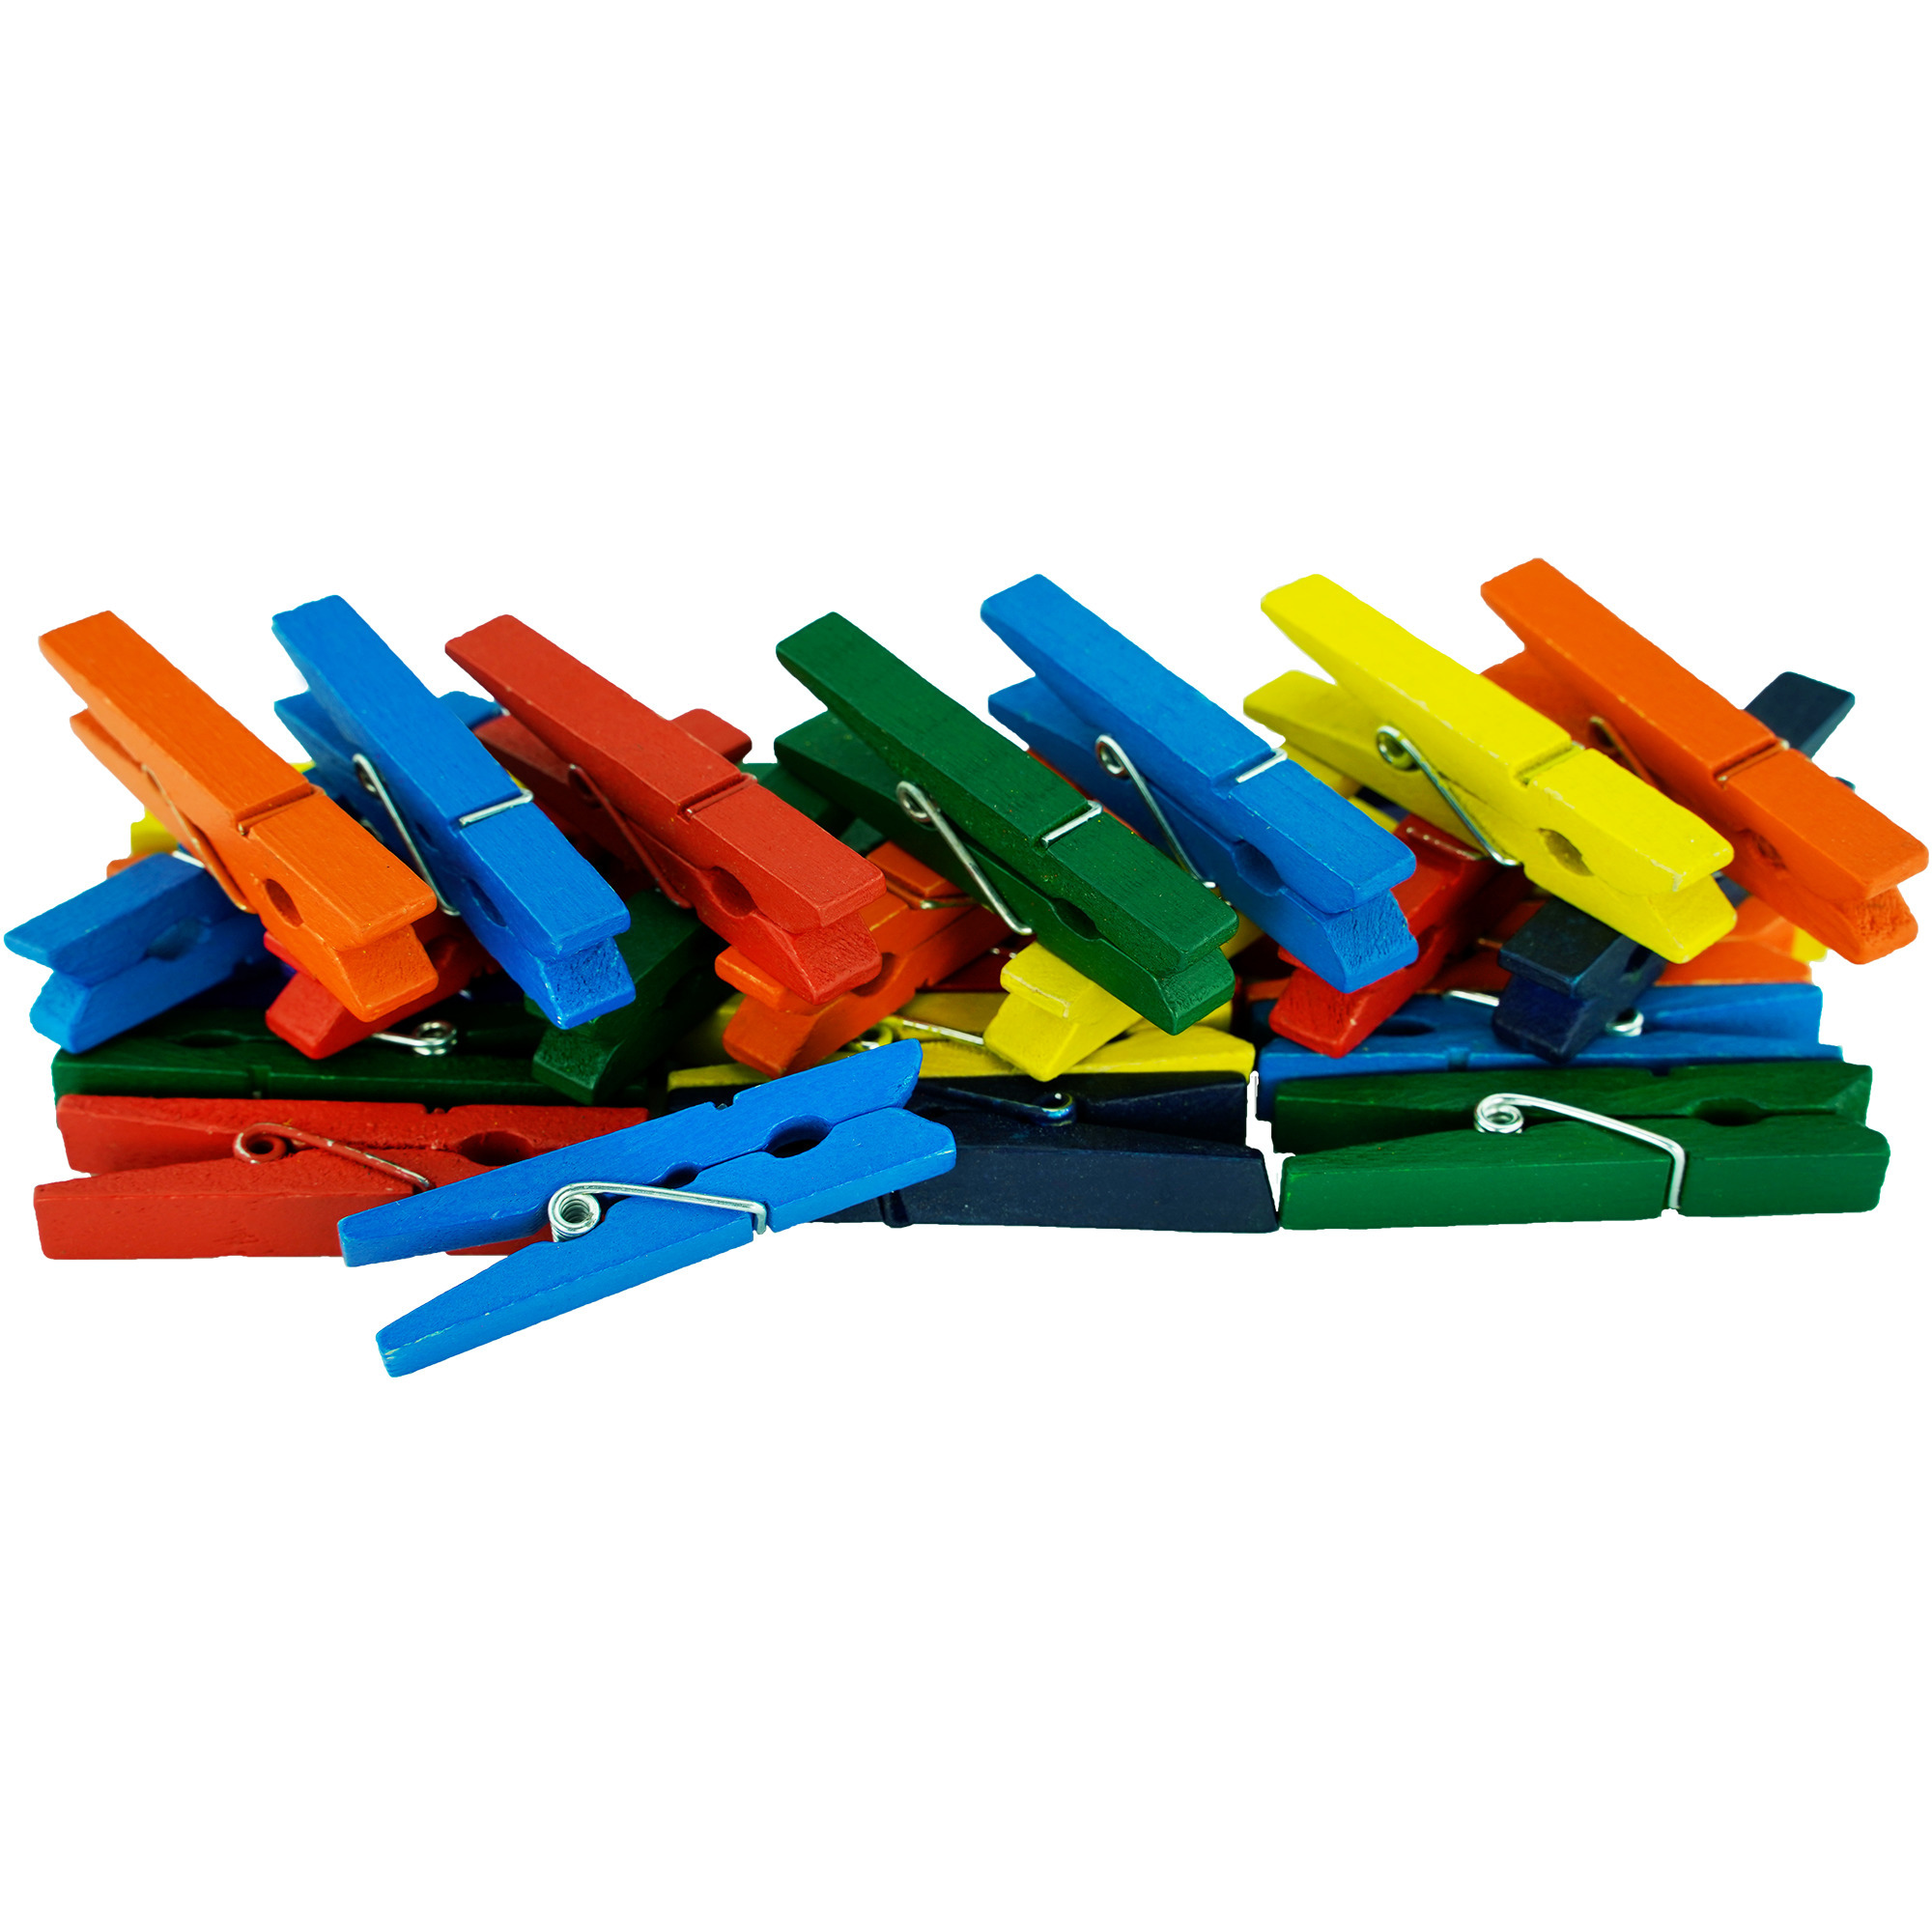 50x stuks multi color kleur hobby knutselen mini knijpers knijpertjes 4.5 cm